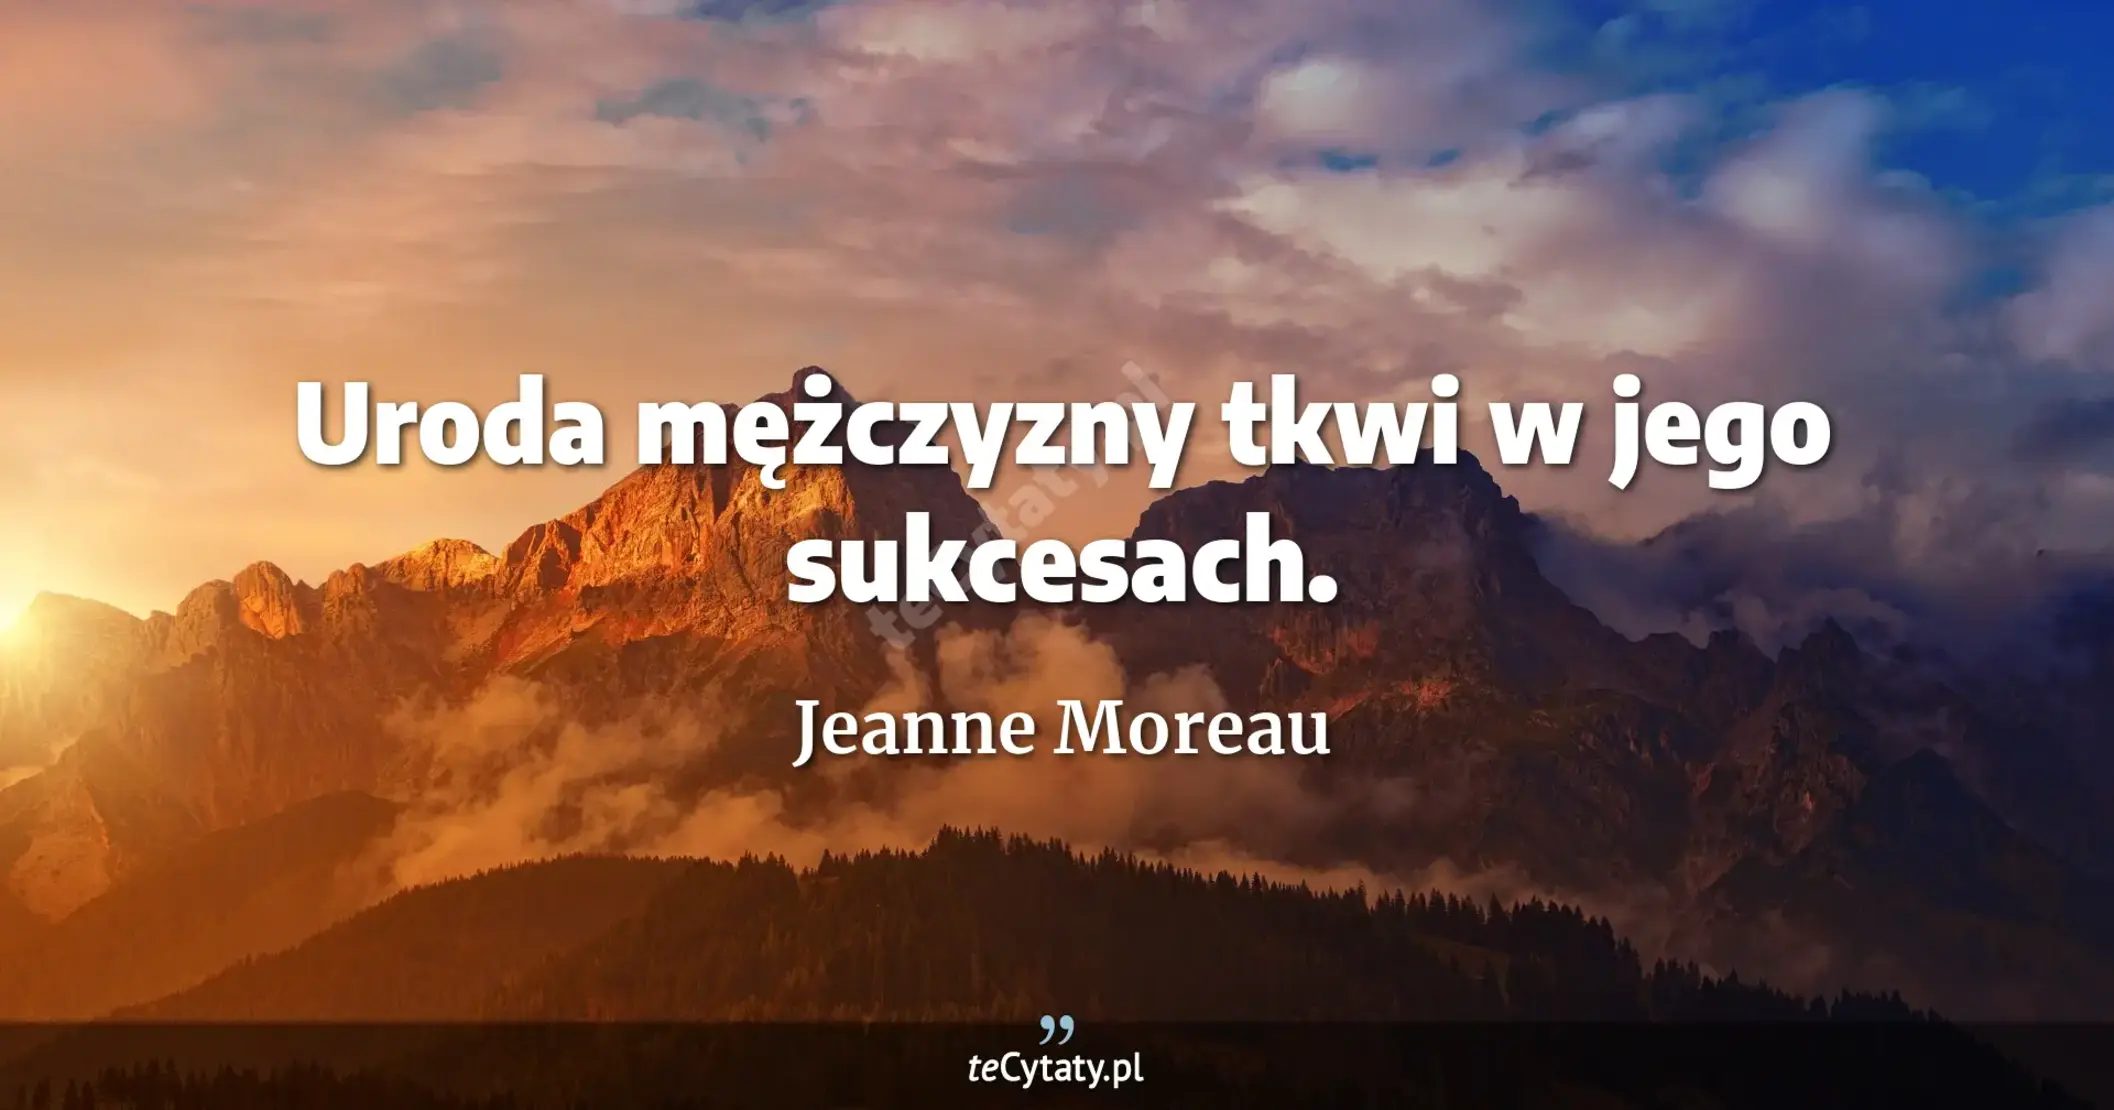 Uroda mężczyzny tkwi w jego sukcesach. - Jeanne Moreau